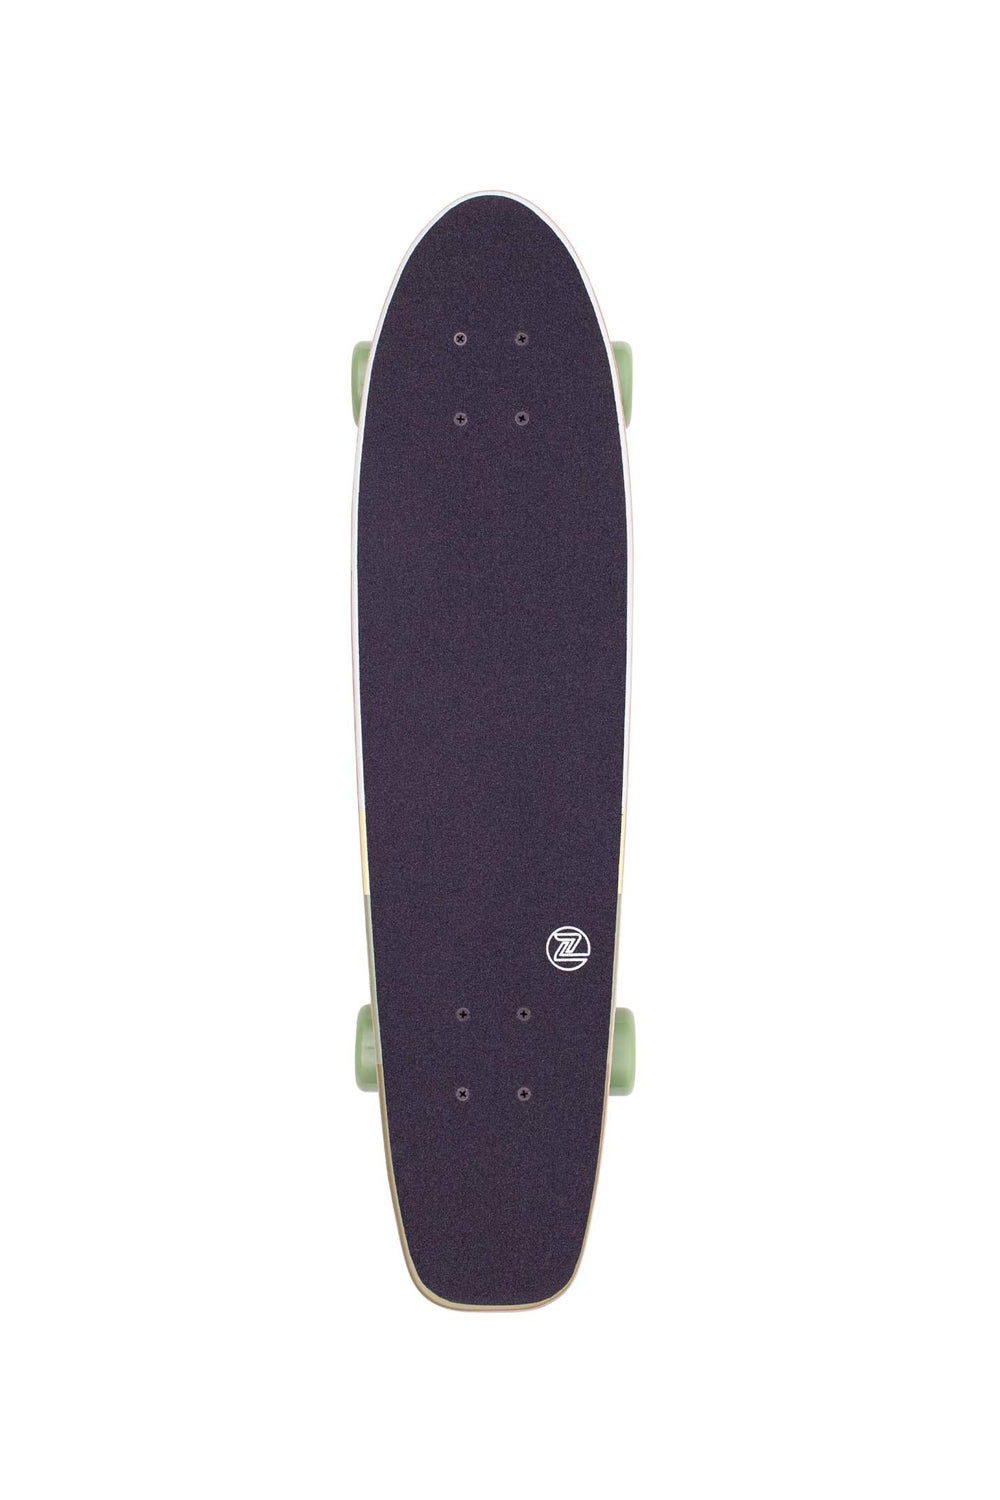 Zflex Bamboo 29 Cruiser Skateboard